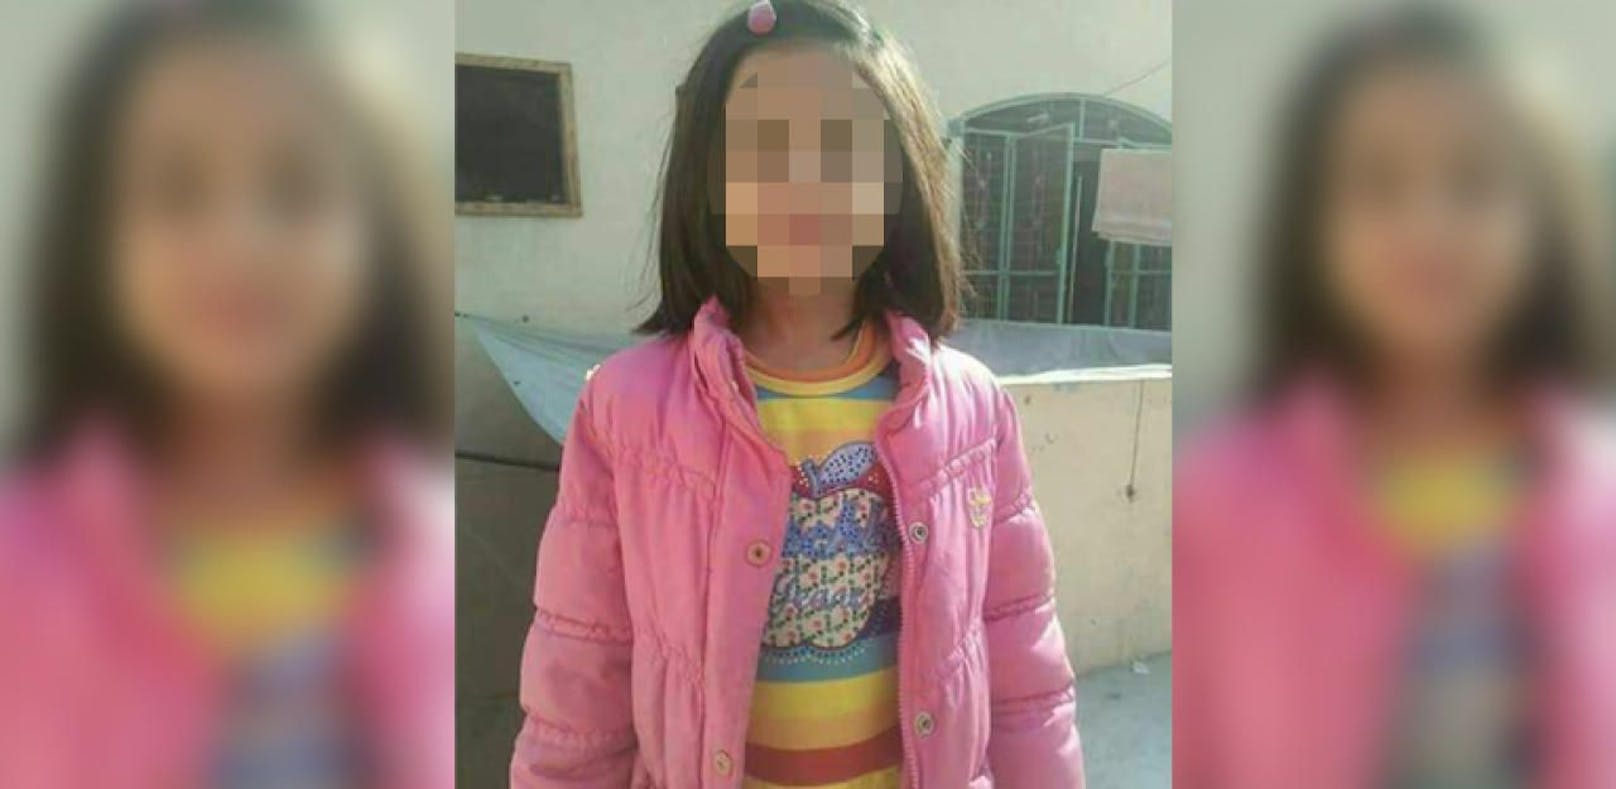 Die kleine Zainab wurde sexuell missbraucht und ermordert